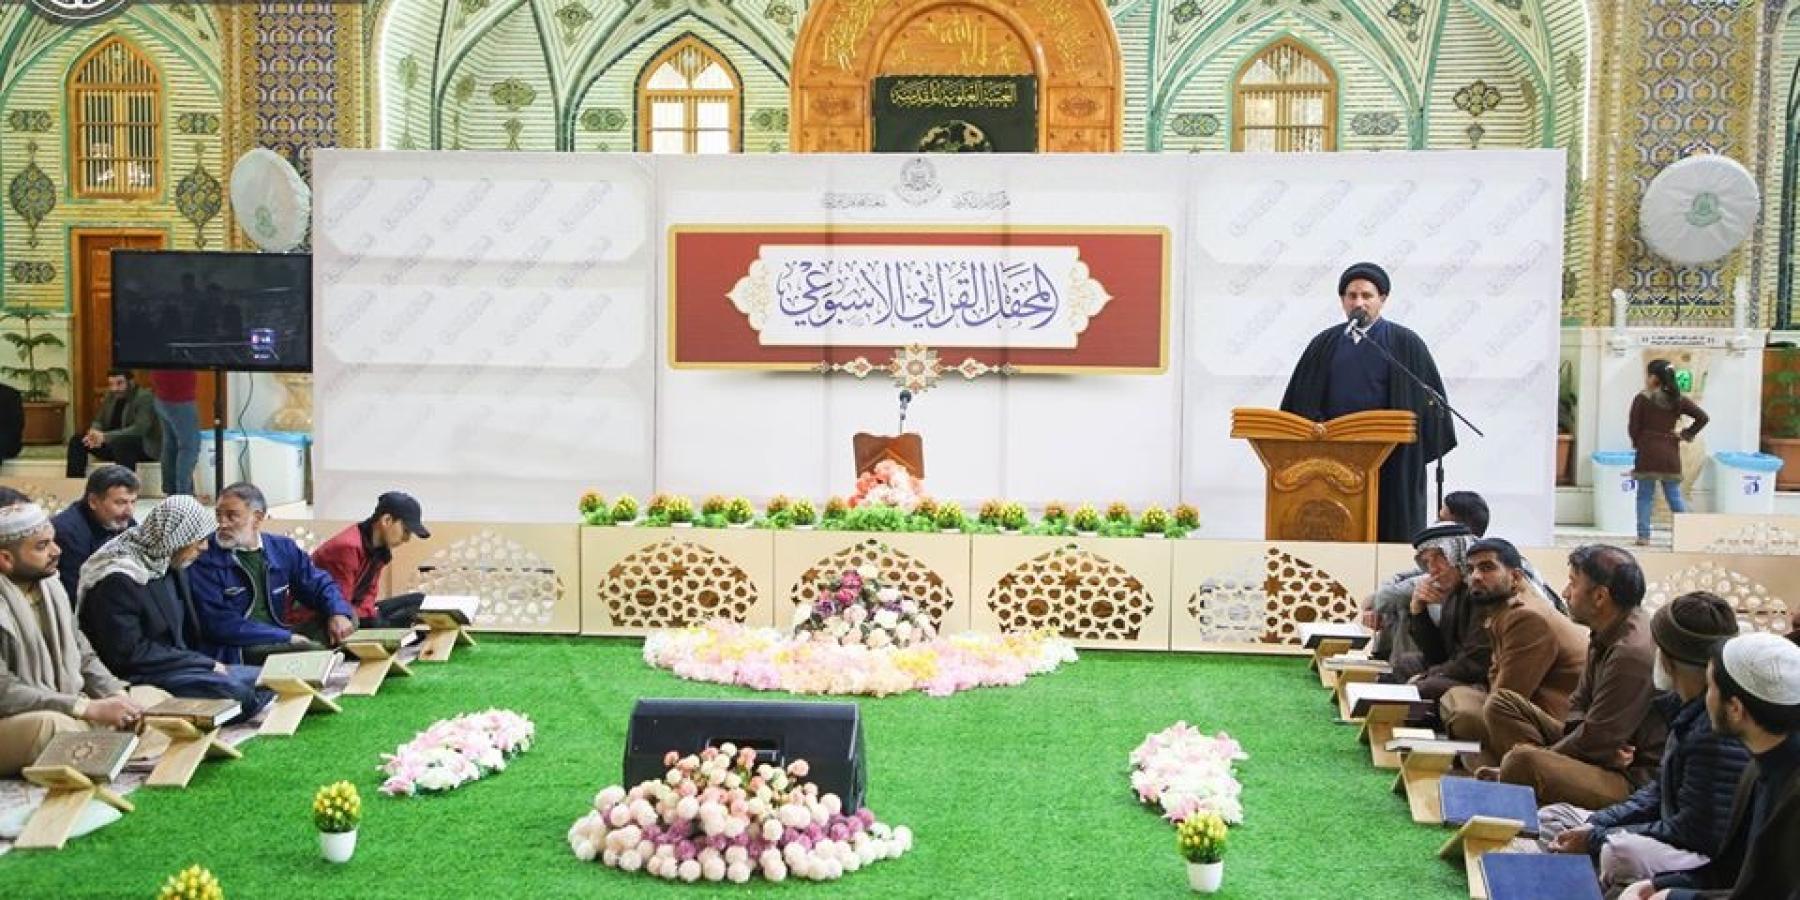 مركز القرآن الكريم يستأنف محفله القرآني الأسبوعي في رحاب الصحن العلوي المطهر